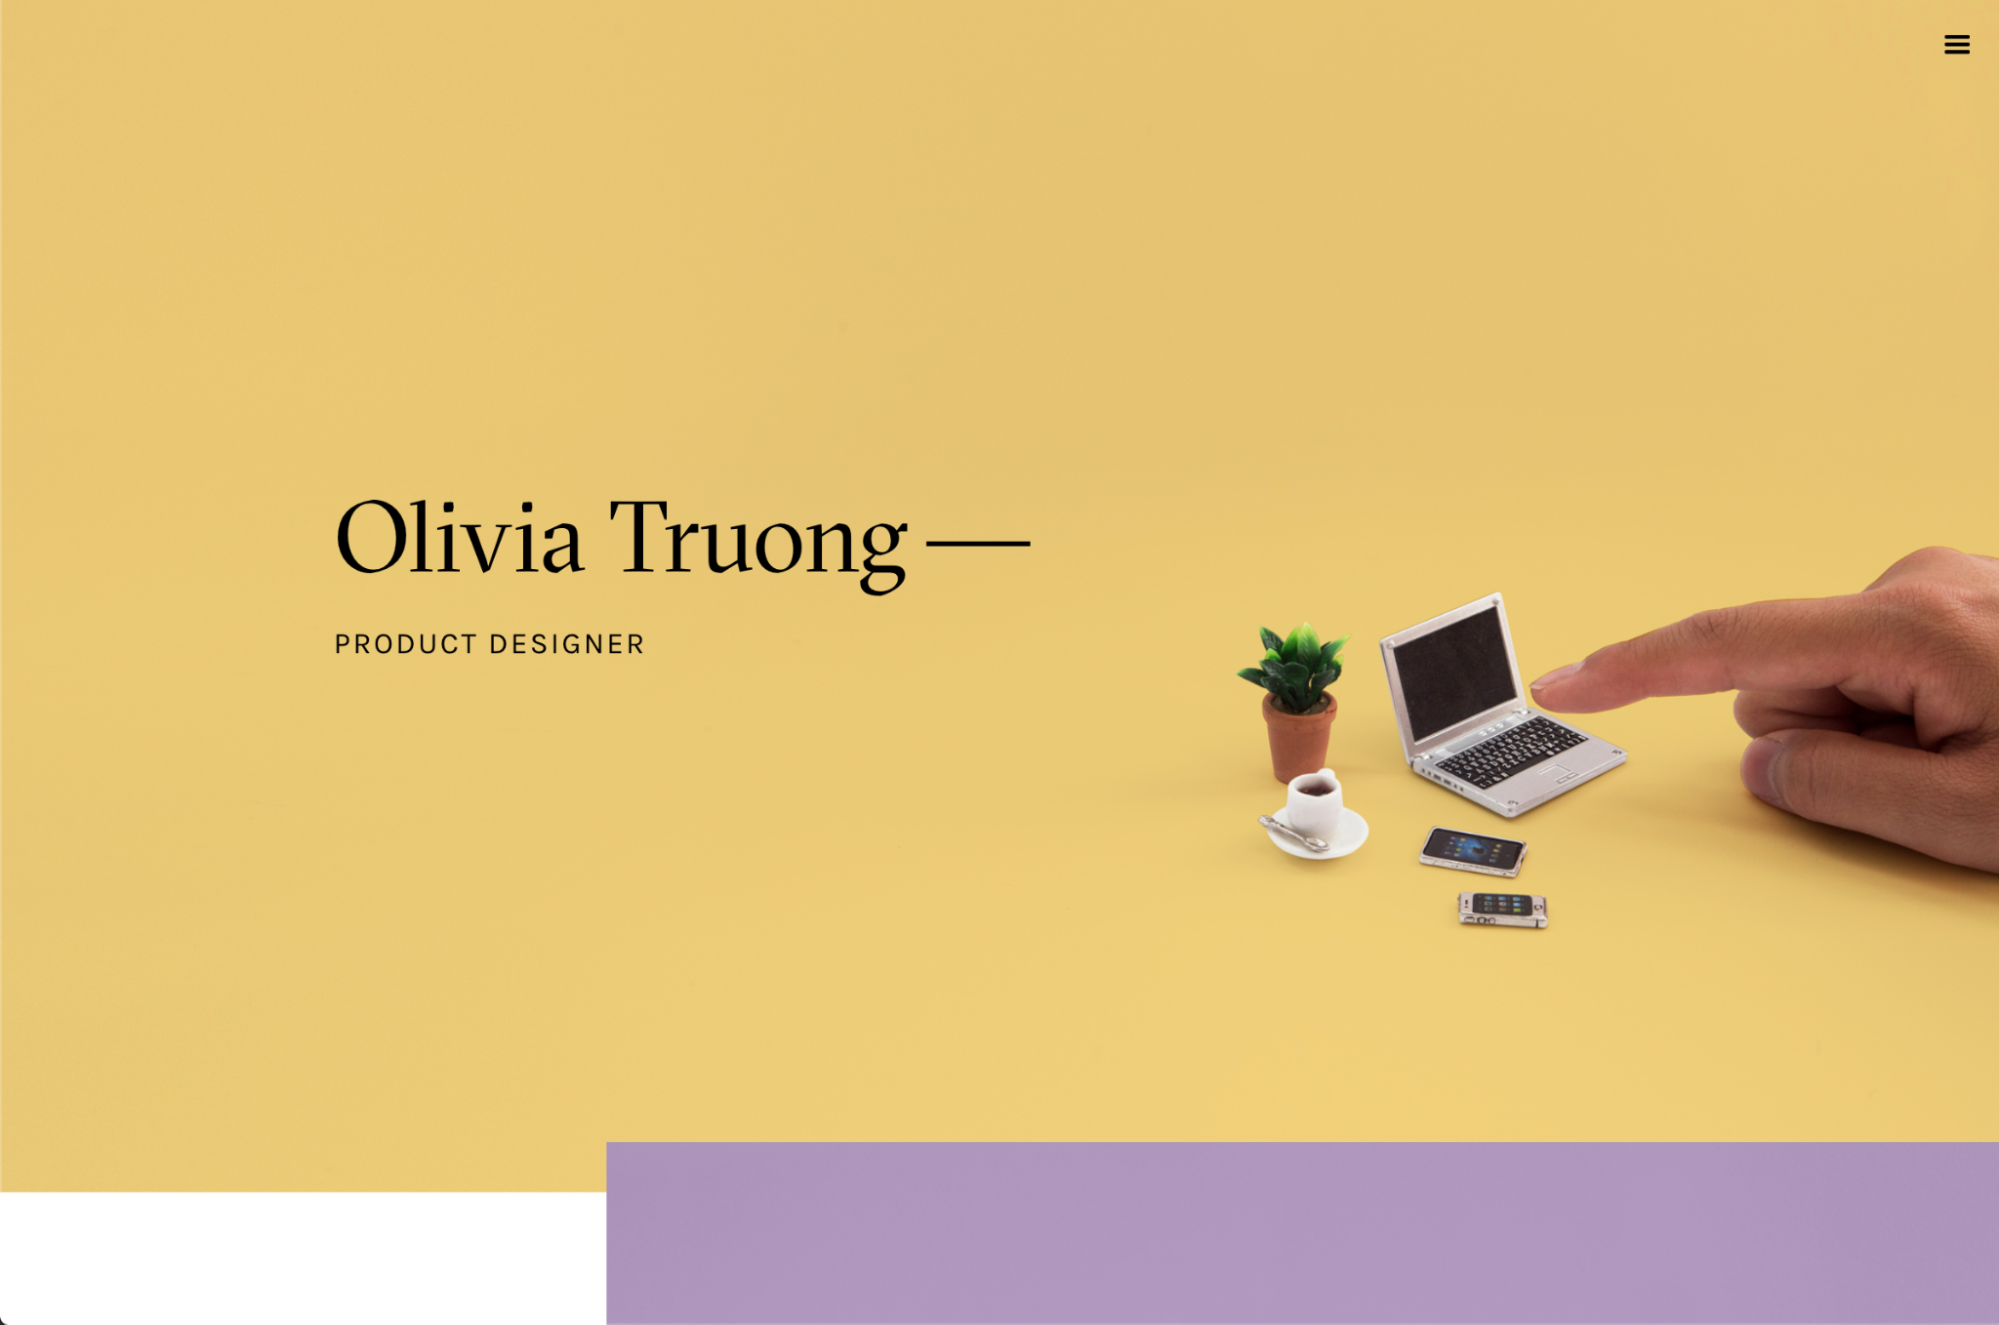 Olivia Truong